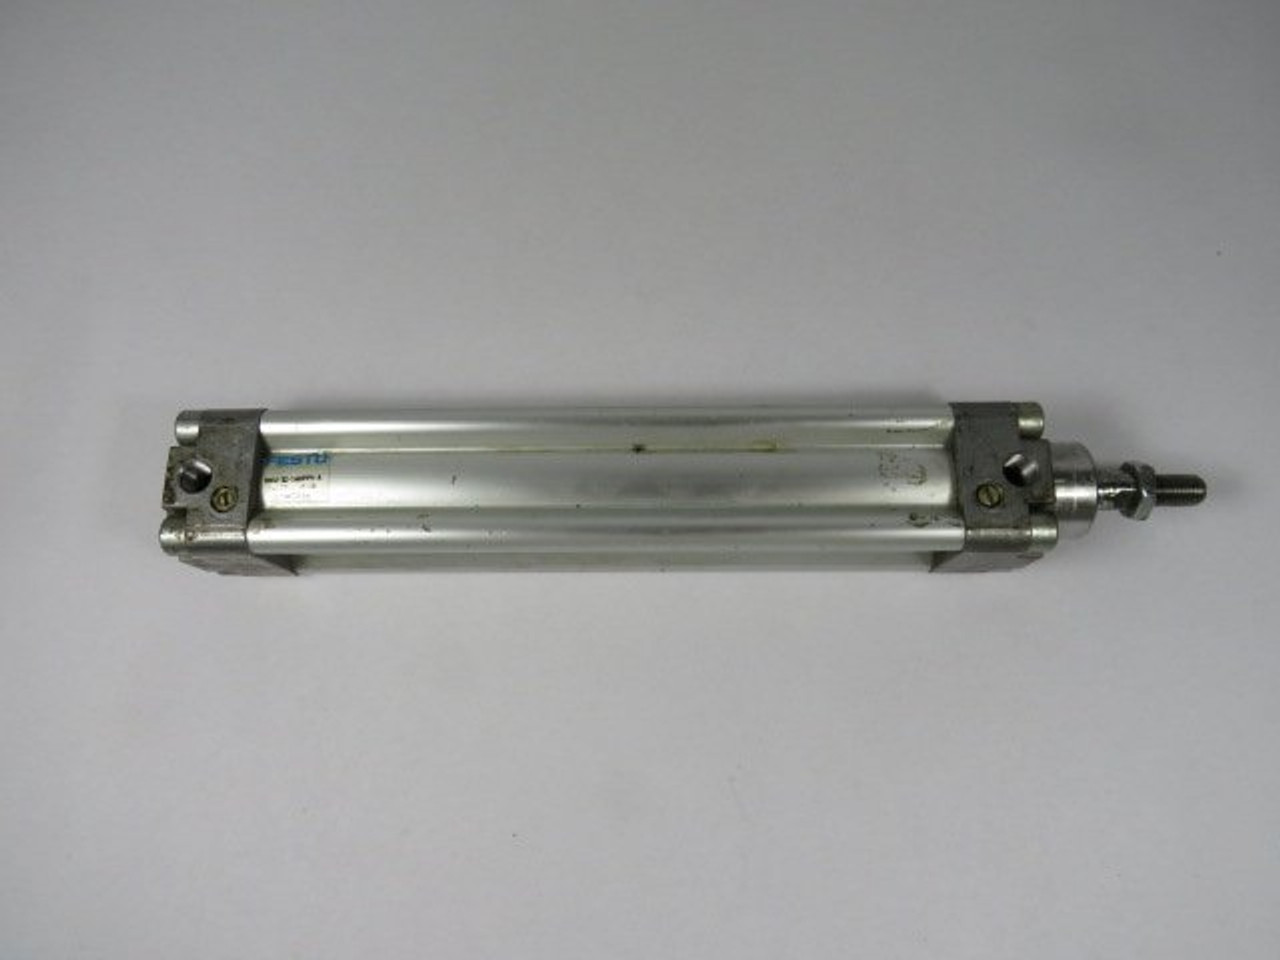 Festo DNU-32-160-PPV-A Pneumatic Cylinder 12 Bar USED